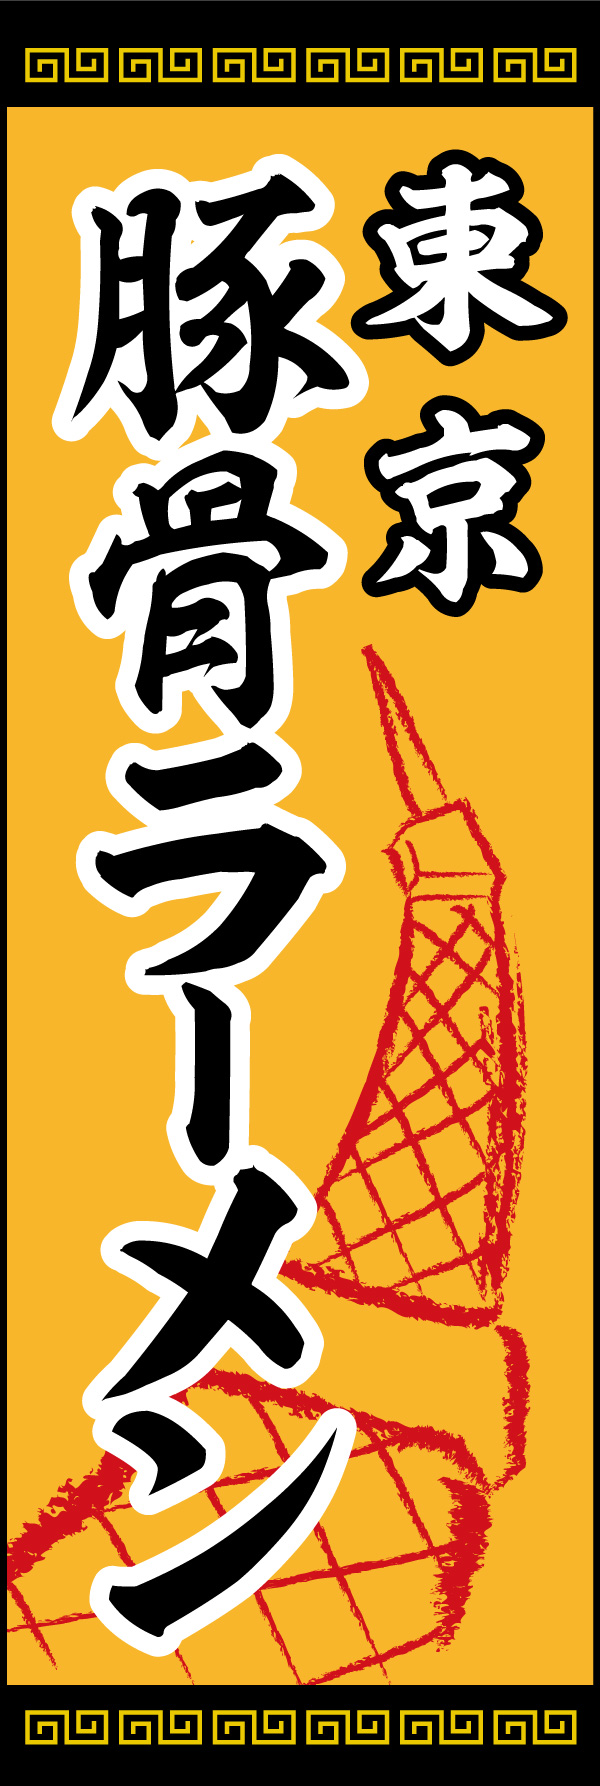 東京とんこつ 02「東京とんこつ」ののぼりです。東京タワーのイラストをシンボルとして入れました。(Y.M) 